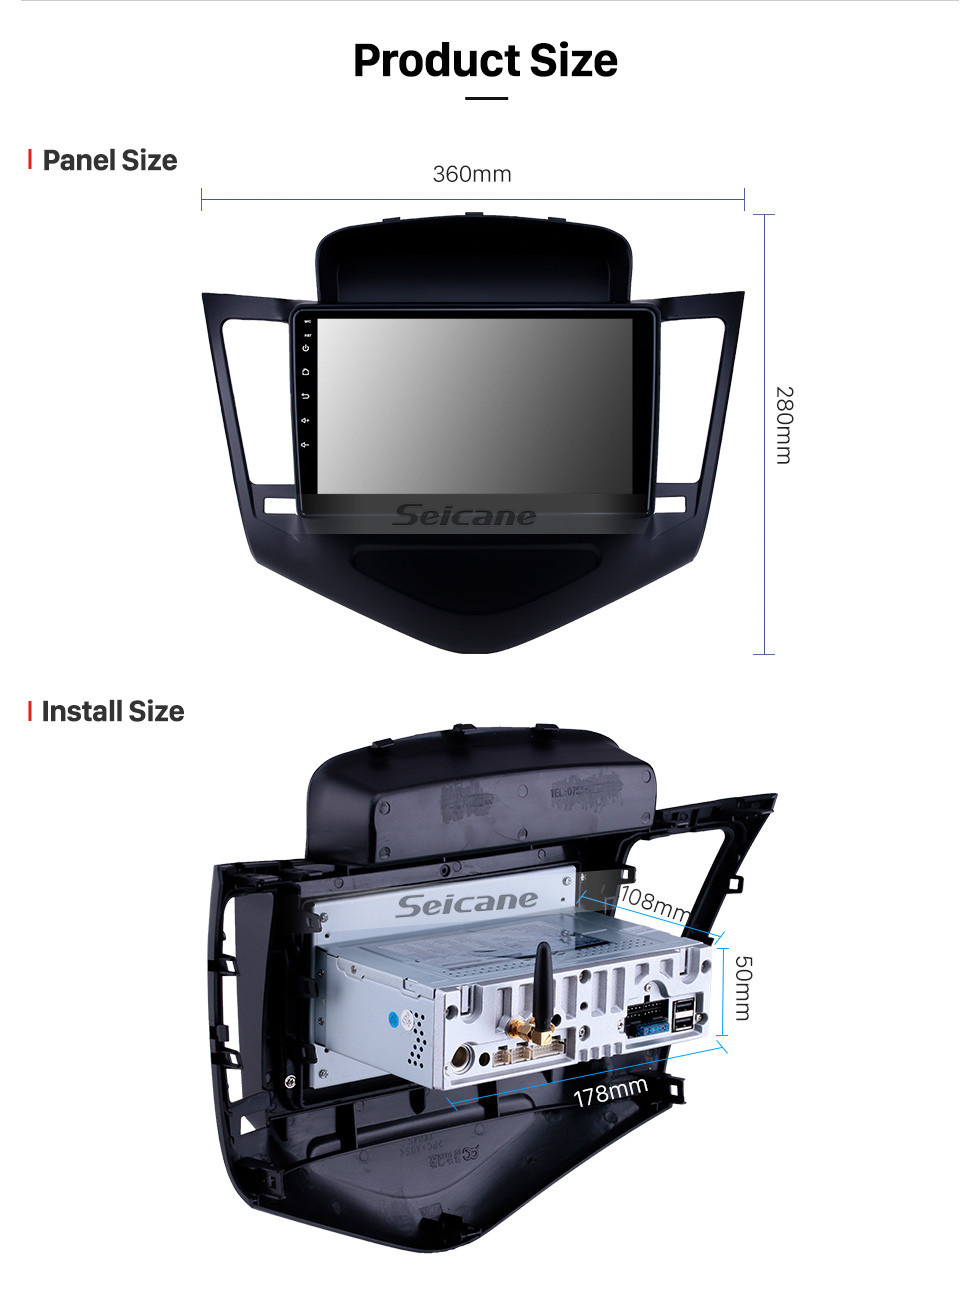 Seicane HD сенсорный экран Android 11.0 9-дюймовый мультимедийный плеер для 2013-2015 Chevy Chevrolet CRUZE с Bluetooth Wi-Fi Поддержка Carplay 1080P Видео Цифровое ТВ